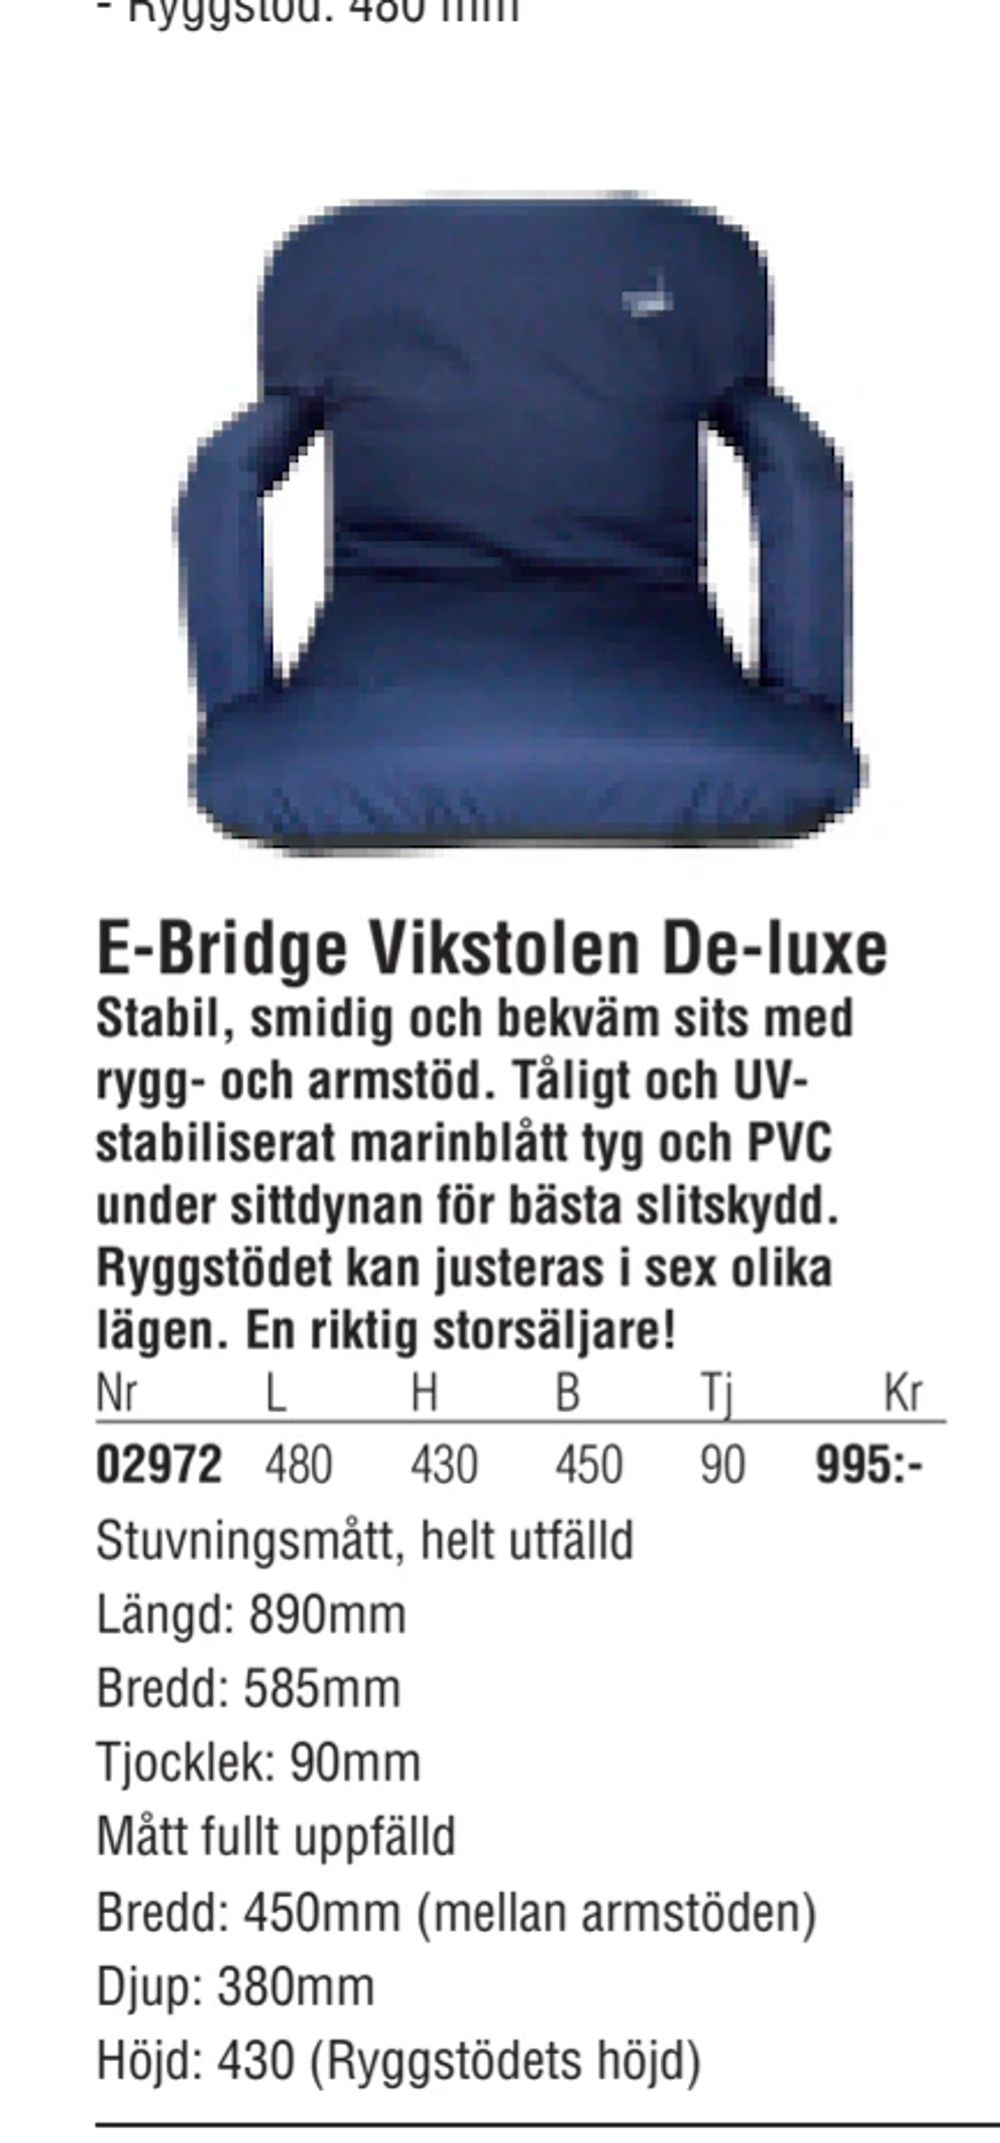 Erbjudanden på E-Bridge Vikstolen De-luxe från Erlandsons Brygga för 995 kr